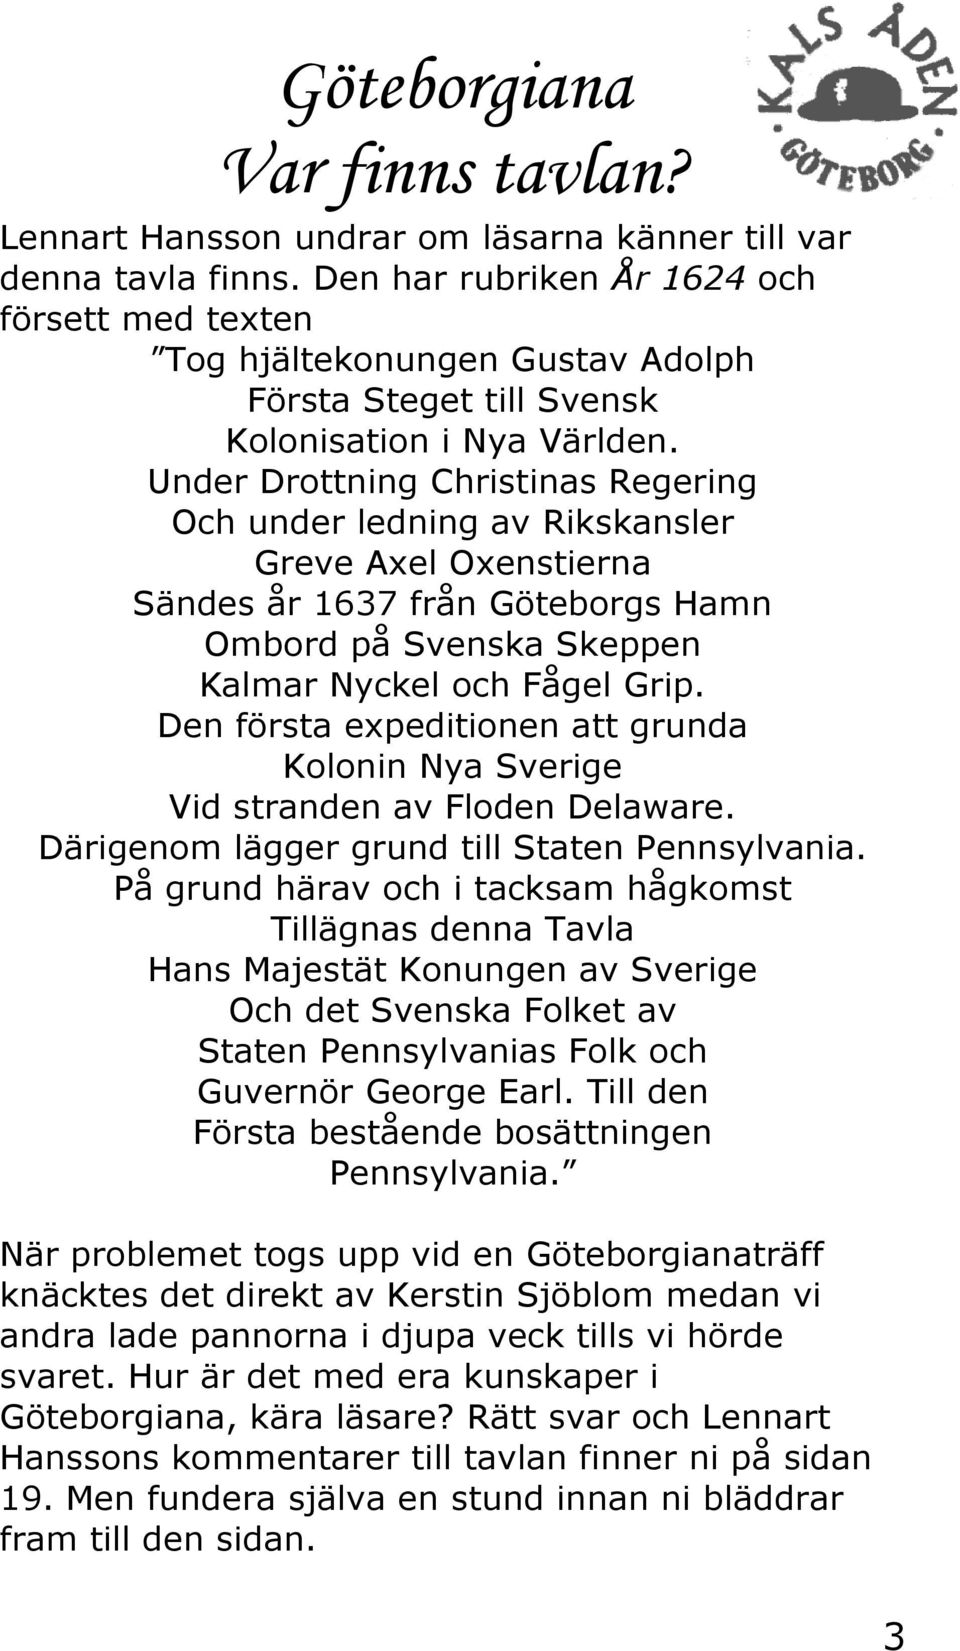 Under Drottning Christinas Regering Och under ledning av Rikskansler Greve Axel Oxenstierna Sändes år 1637 från Göteborgs Hamn Ombord på Svenska Skeppen Kalmar Nyckel och Fågel Grip.